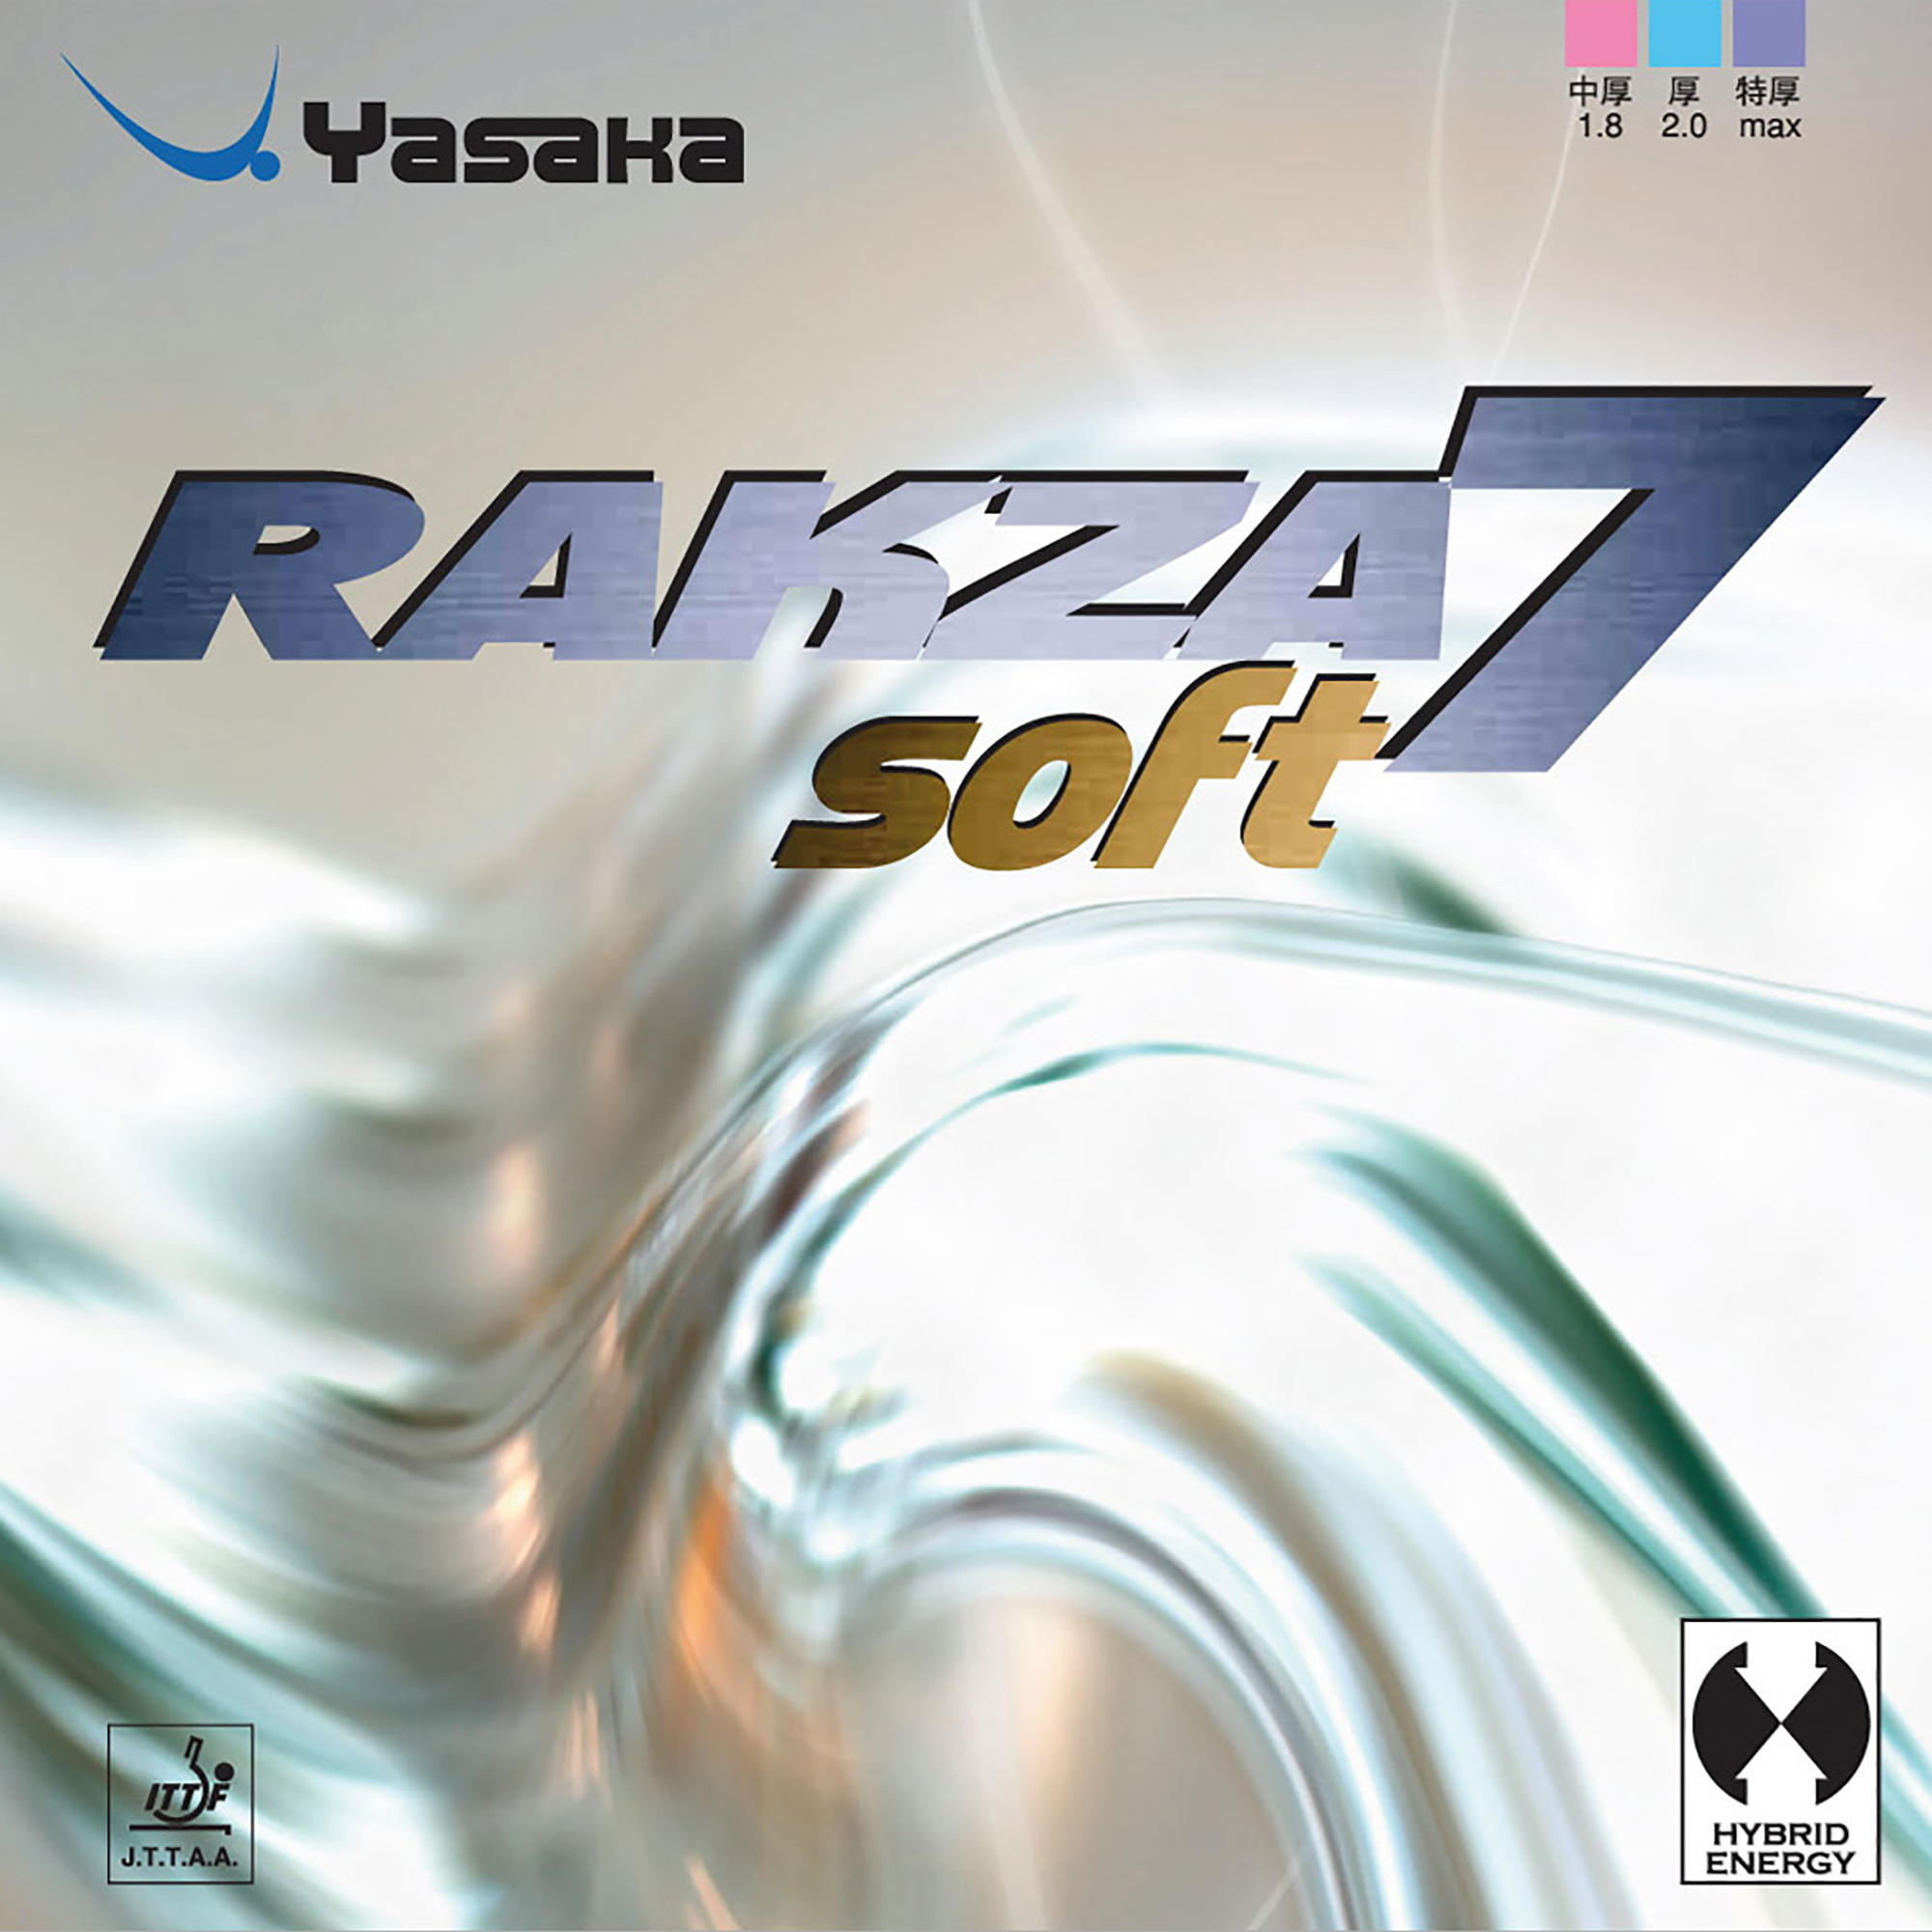 Față Paletă Tenis de Masă Rakza 7 Soft decathlon.ro